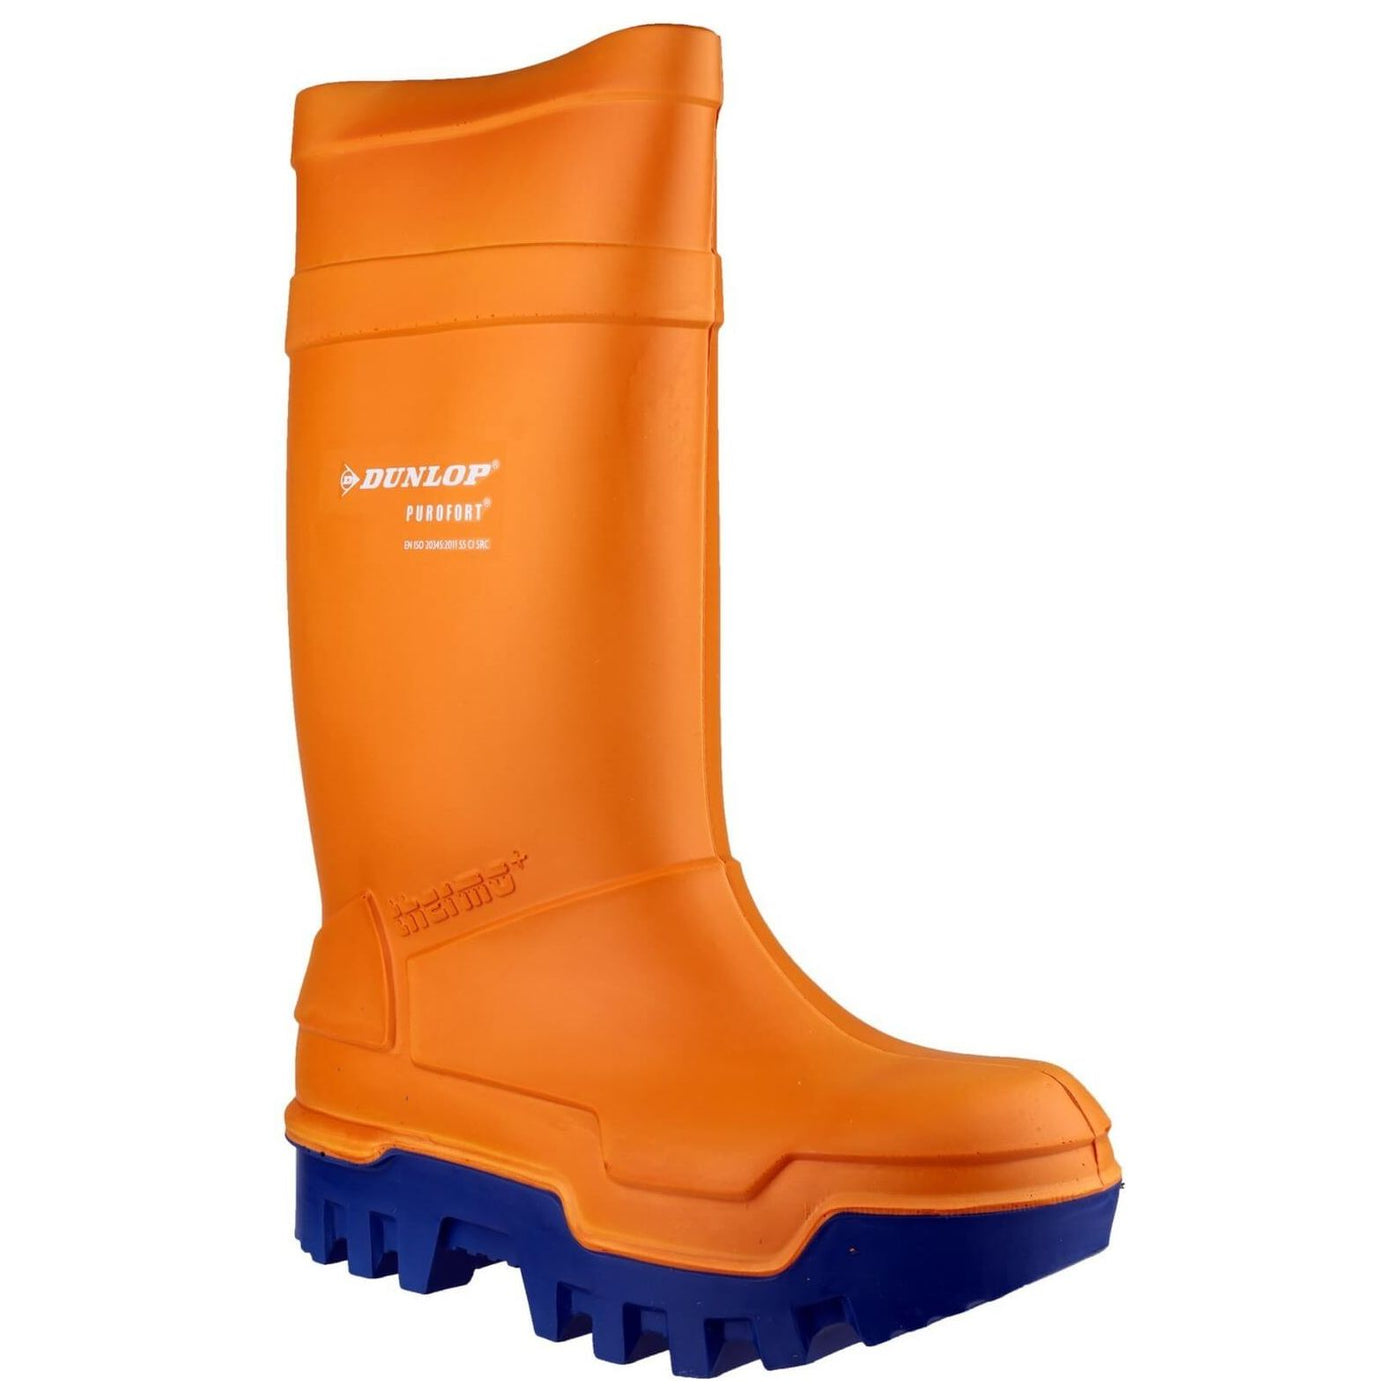 Dunlop Purofort Thermo+ Safety Wellies-Orange-Main